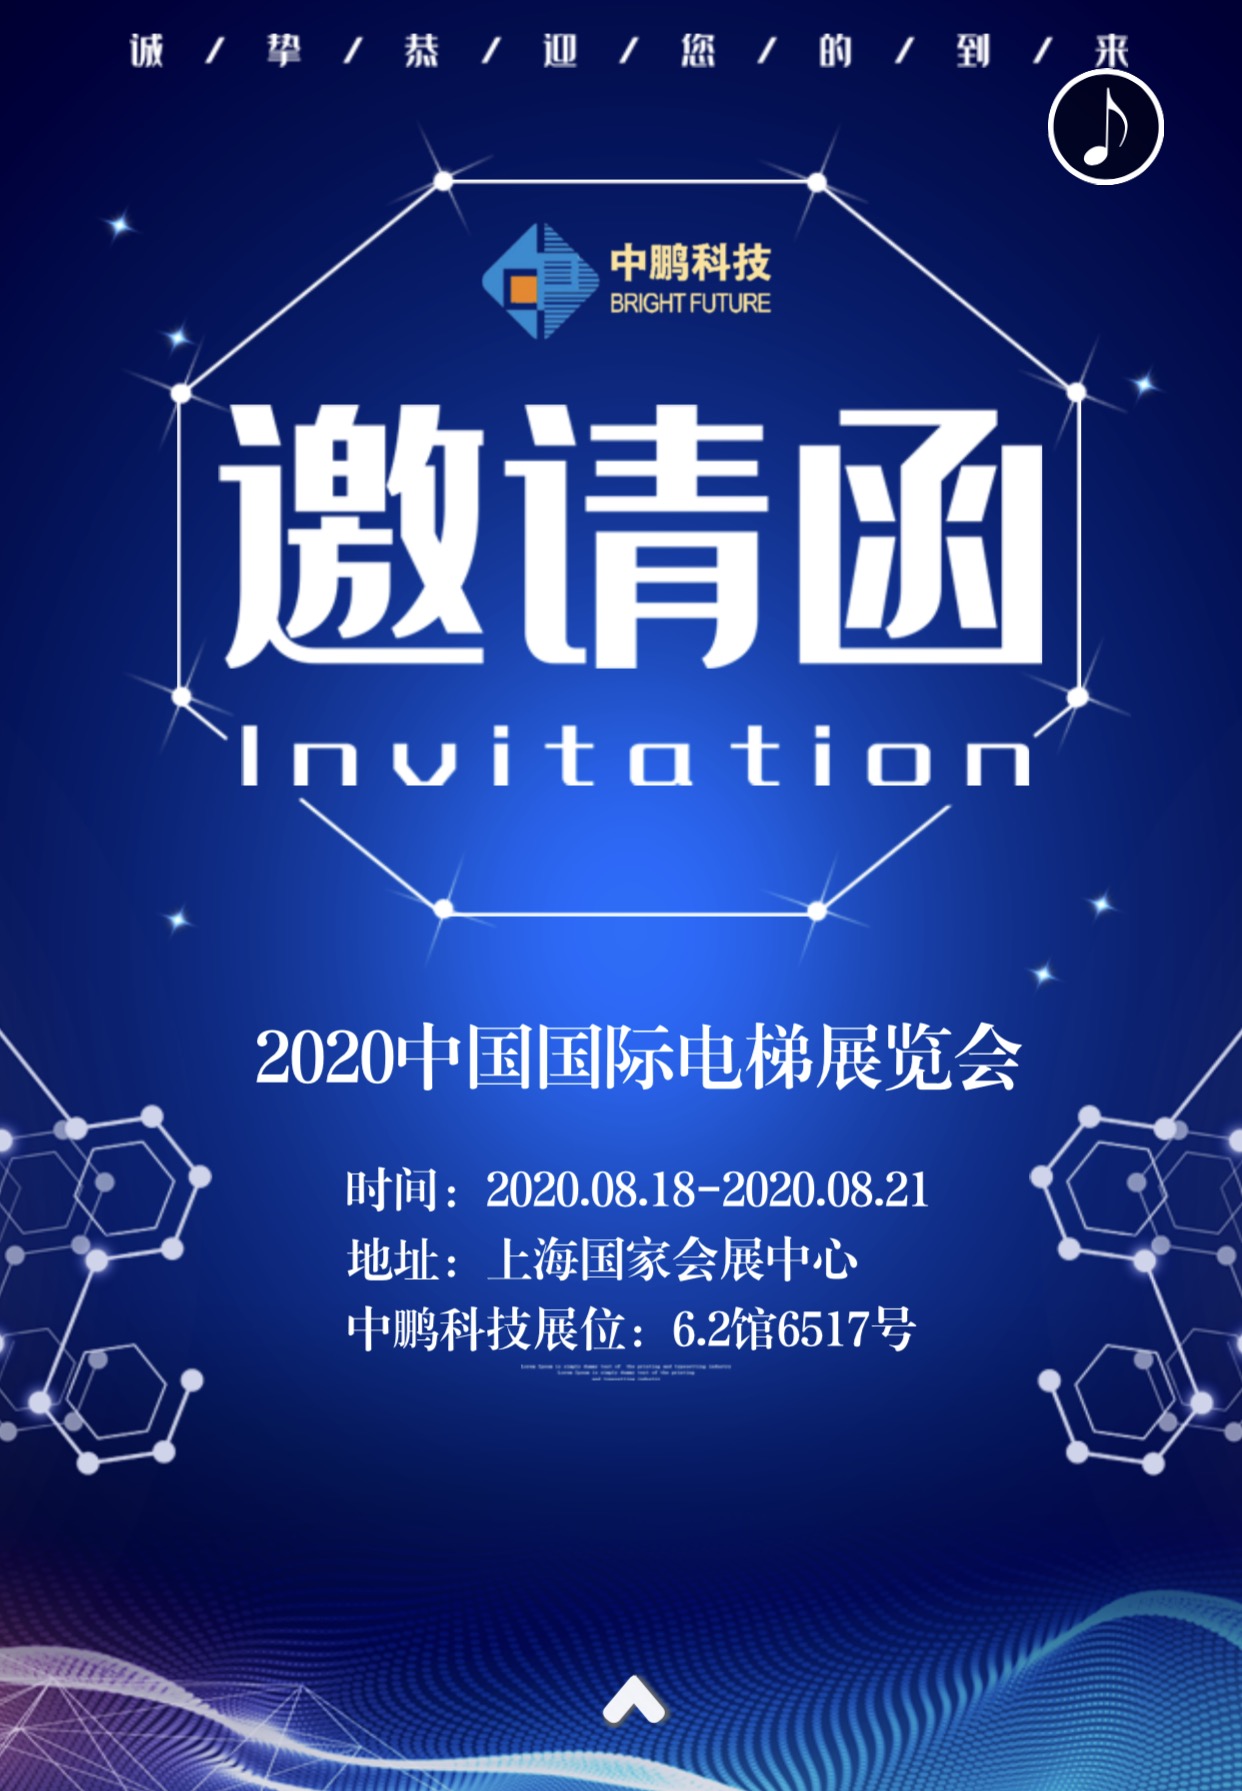 中鵬科技-第十四屆中國國際電梯展覽會邀請函